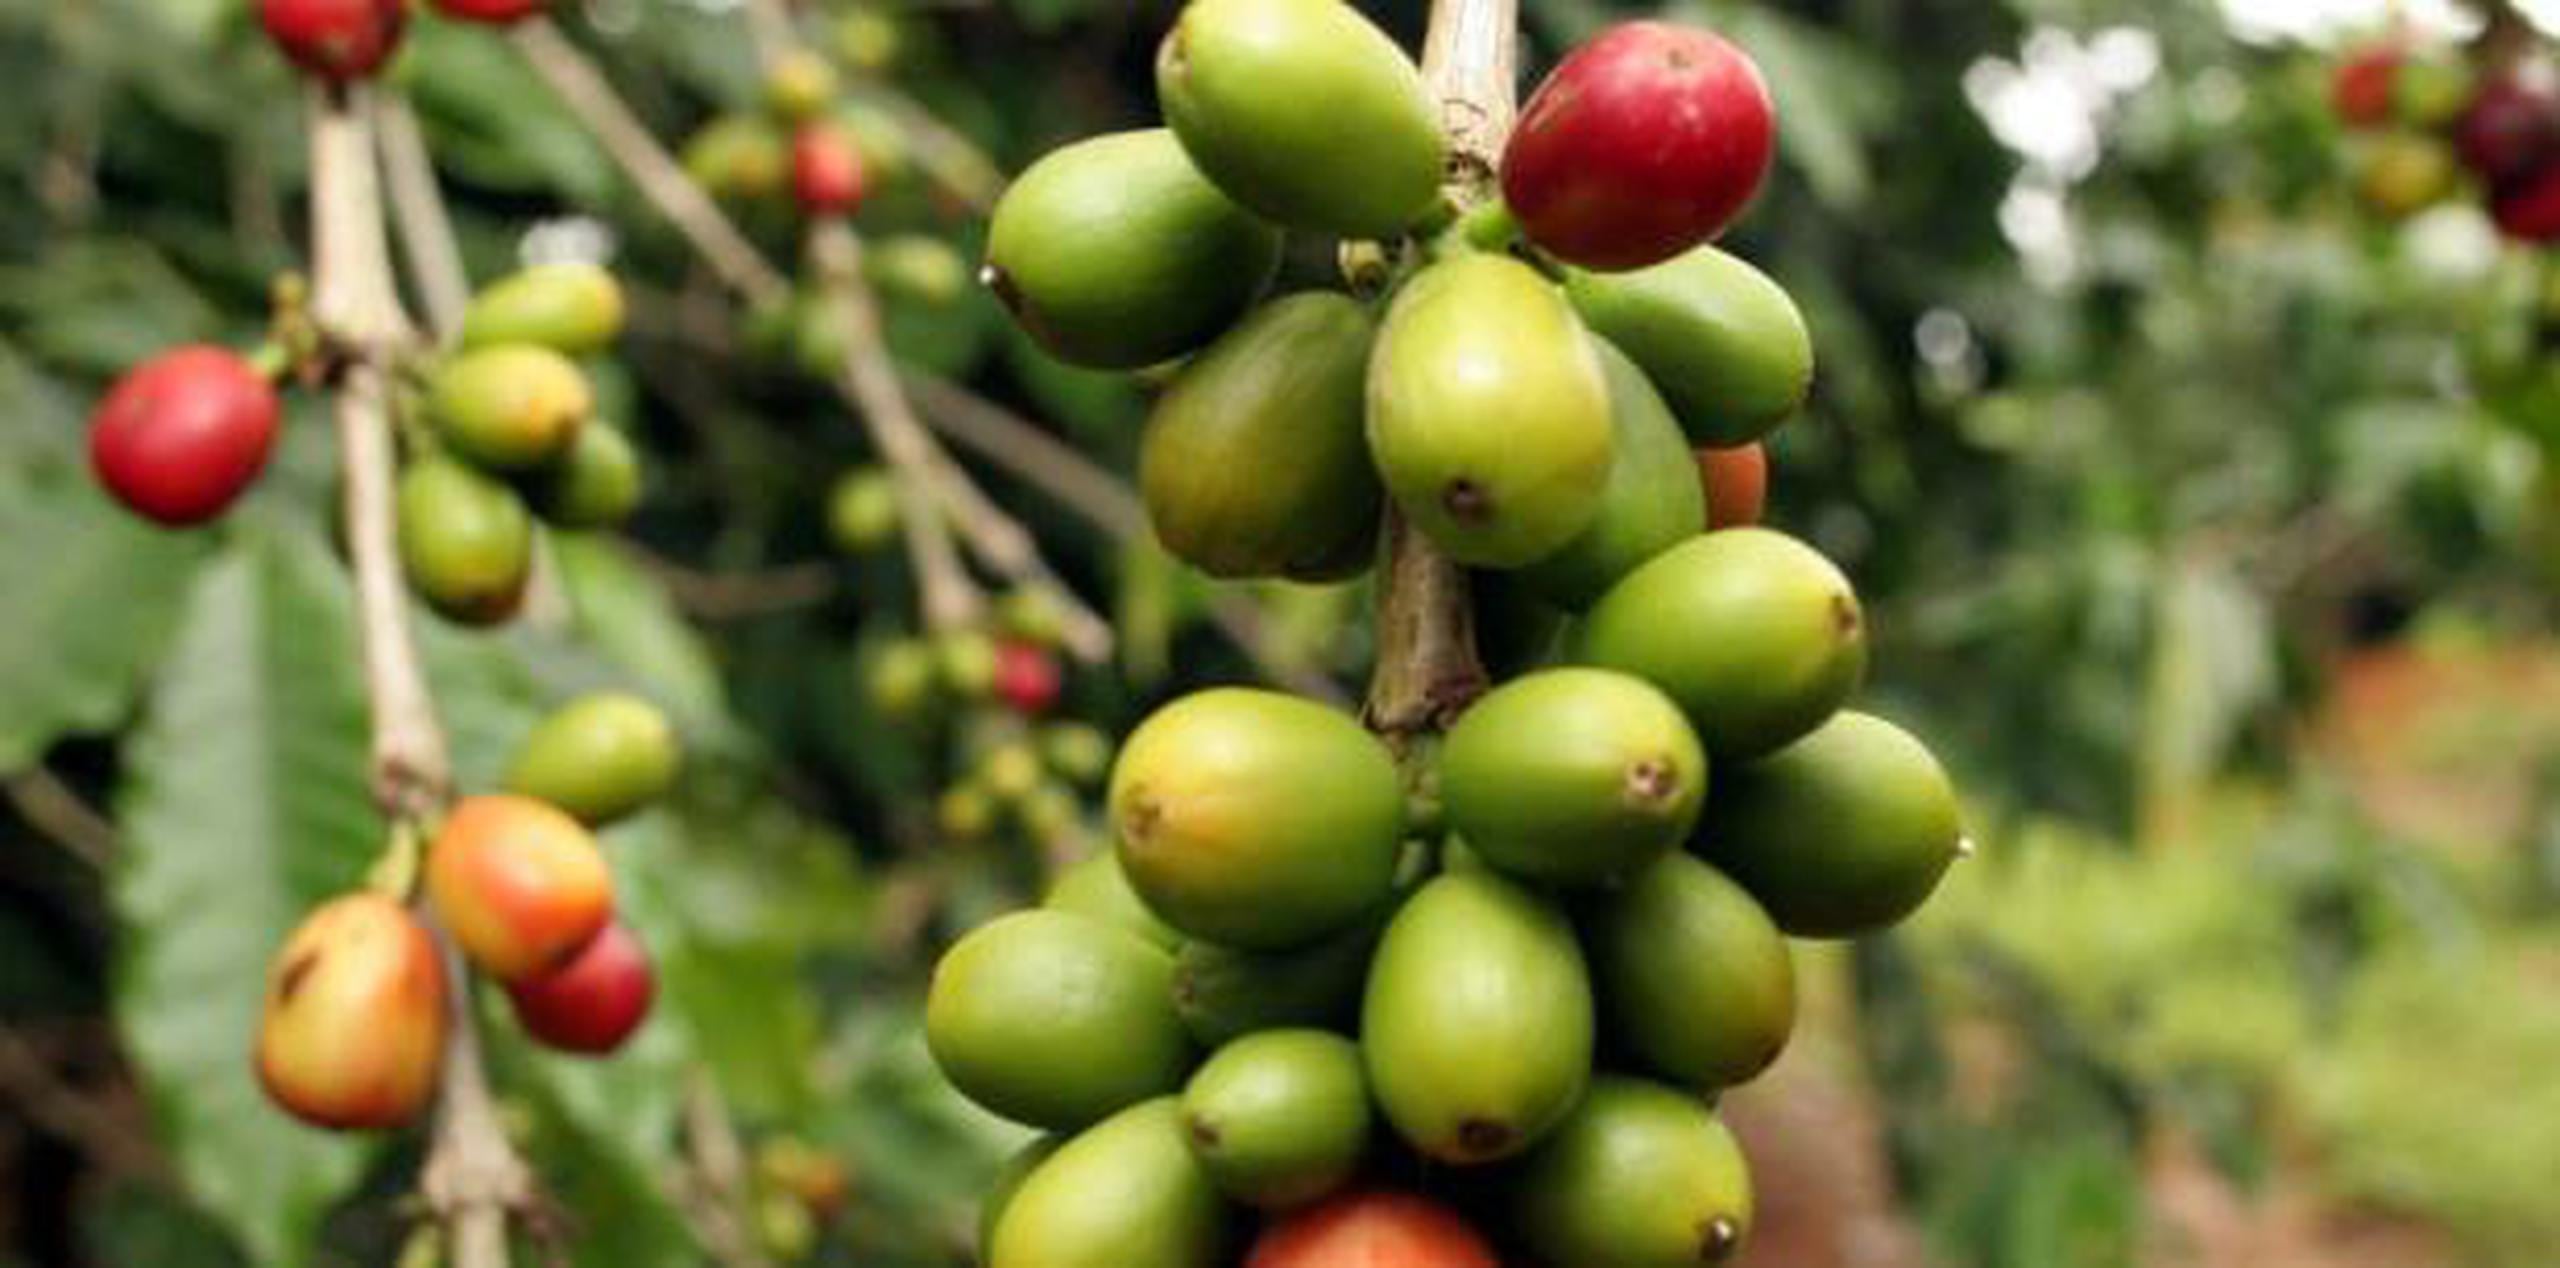 Resaltaron la importancia del sector del café porque alrededor de 200,000 familias en la isla dependen de dicha industria. (Archivo)